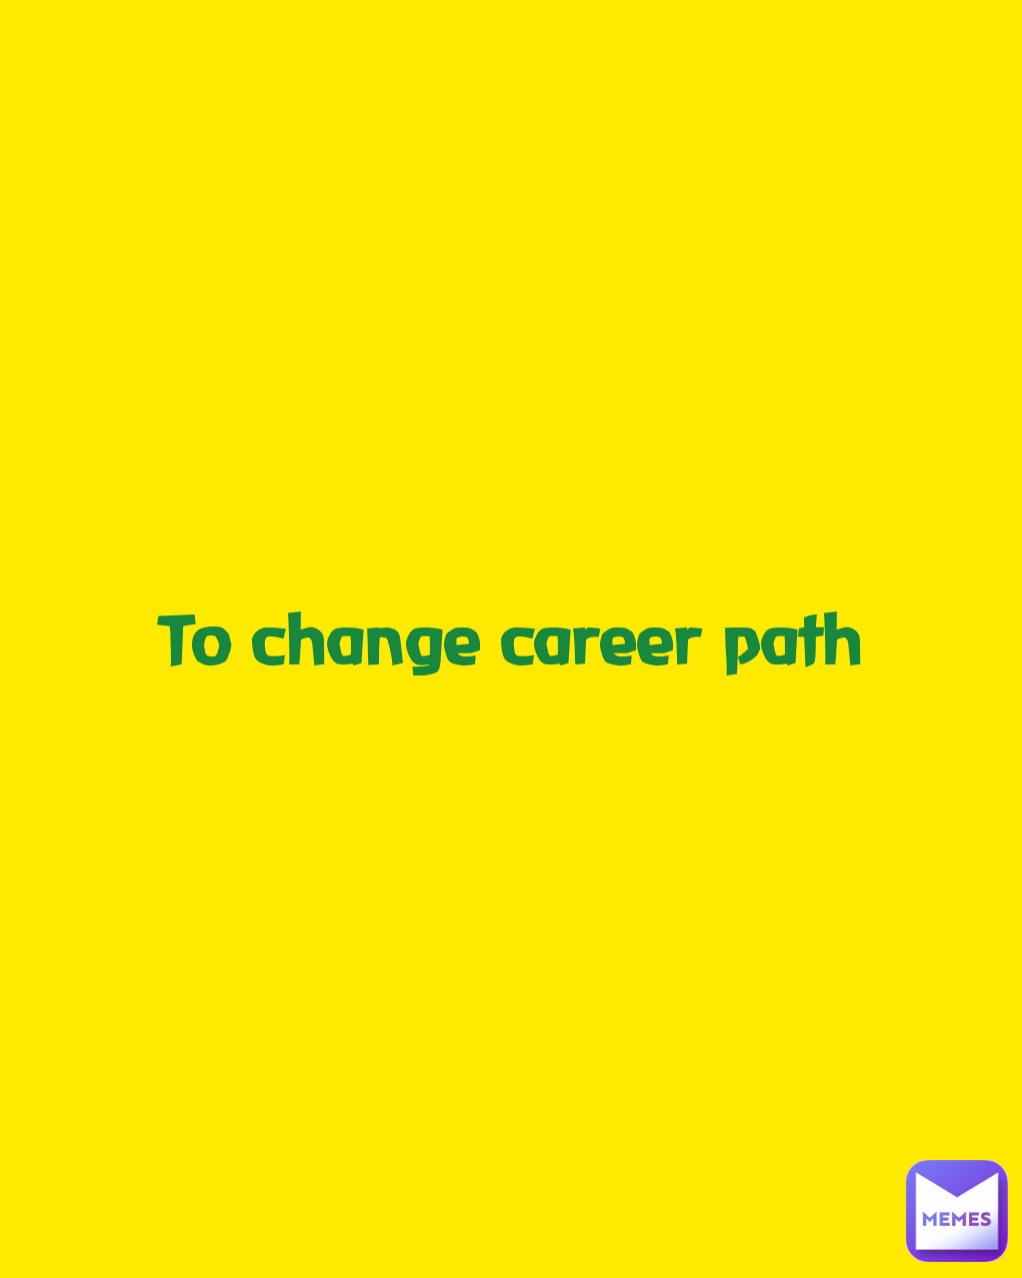 To change career path